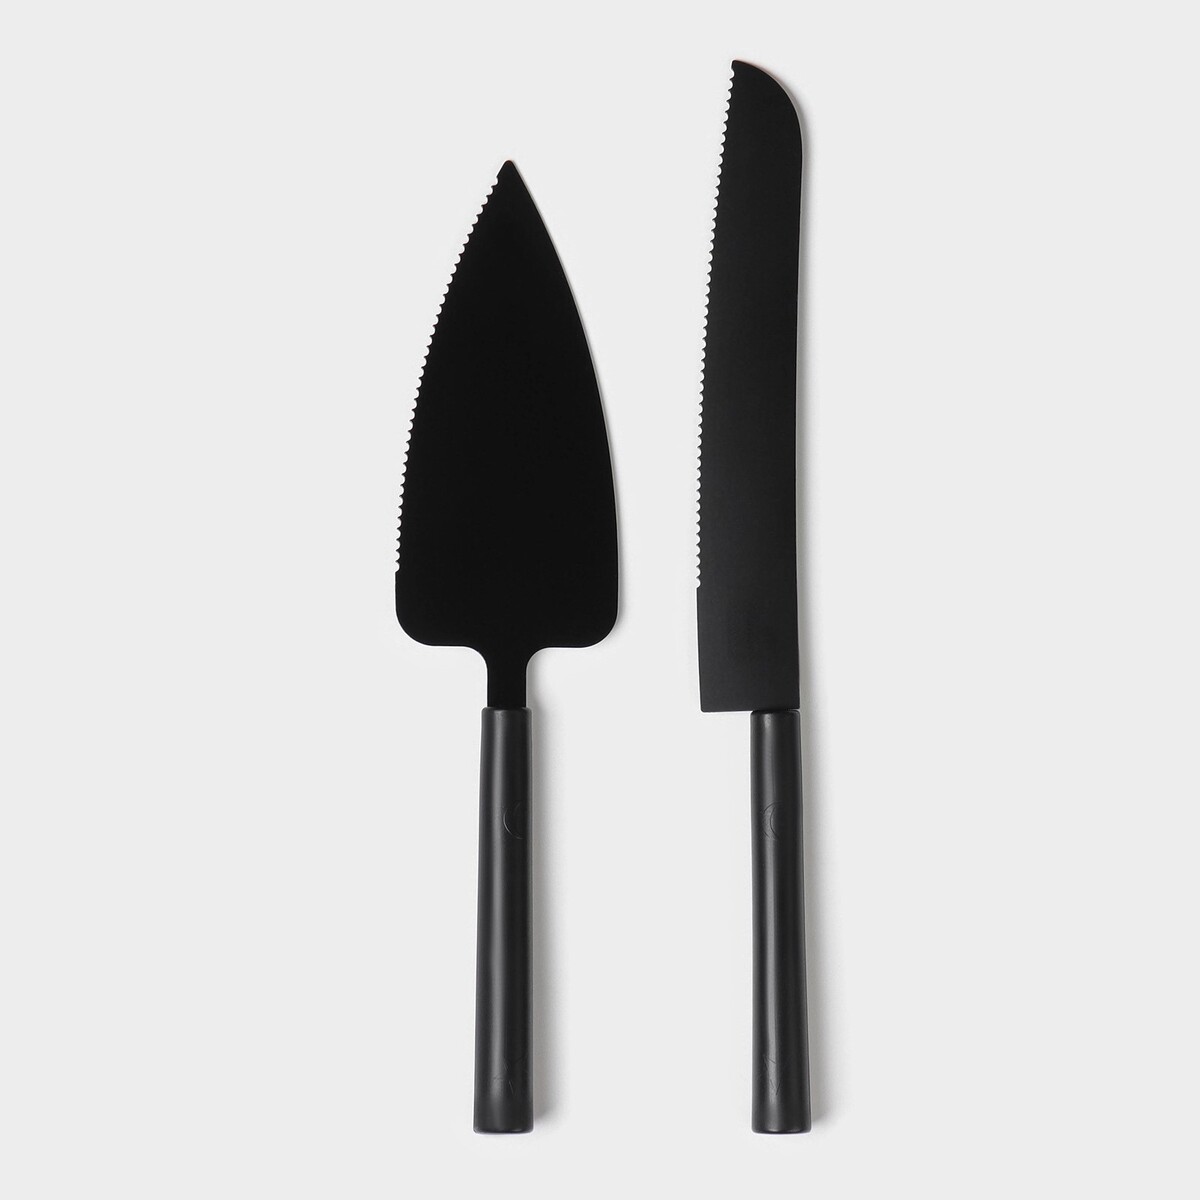 Набор кондитерских инструментов доляна black, 2 предмета: лопатка (длина лезвия 12,5 см), нож (длина лезвия 16,5 см), цвет черный набор кондитерских инструментов для моделирования 7 предметов нержавеющая сталь